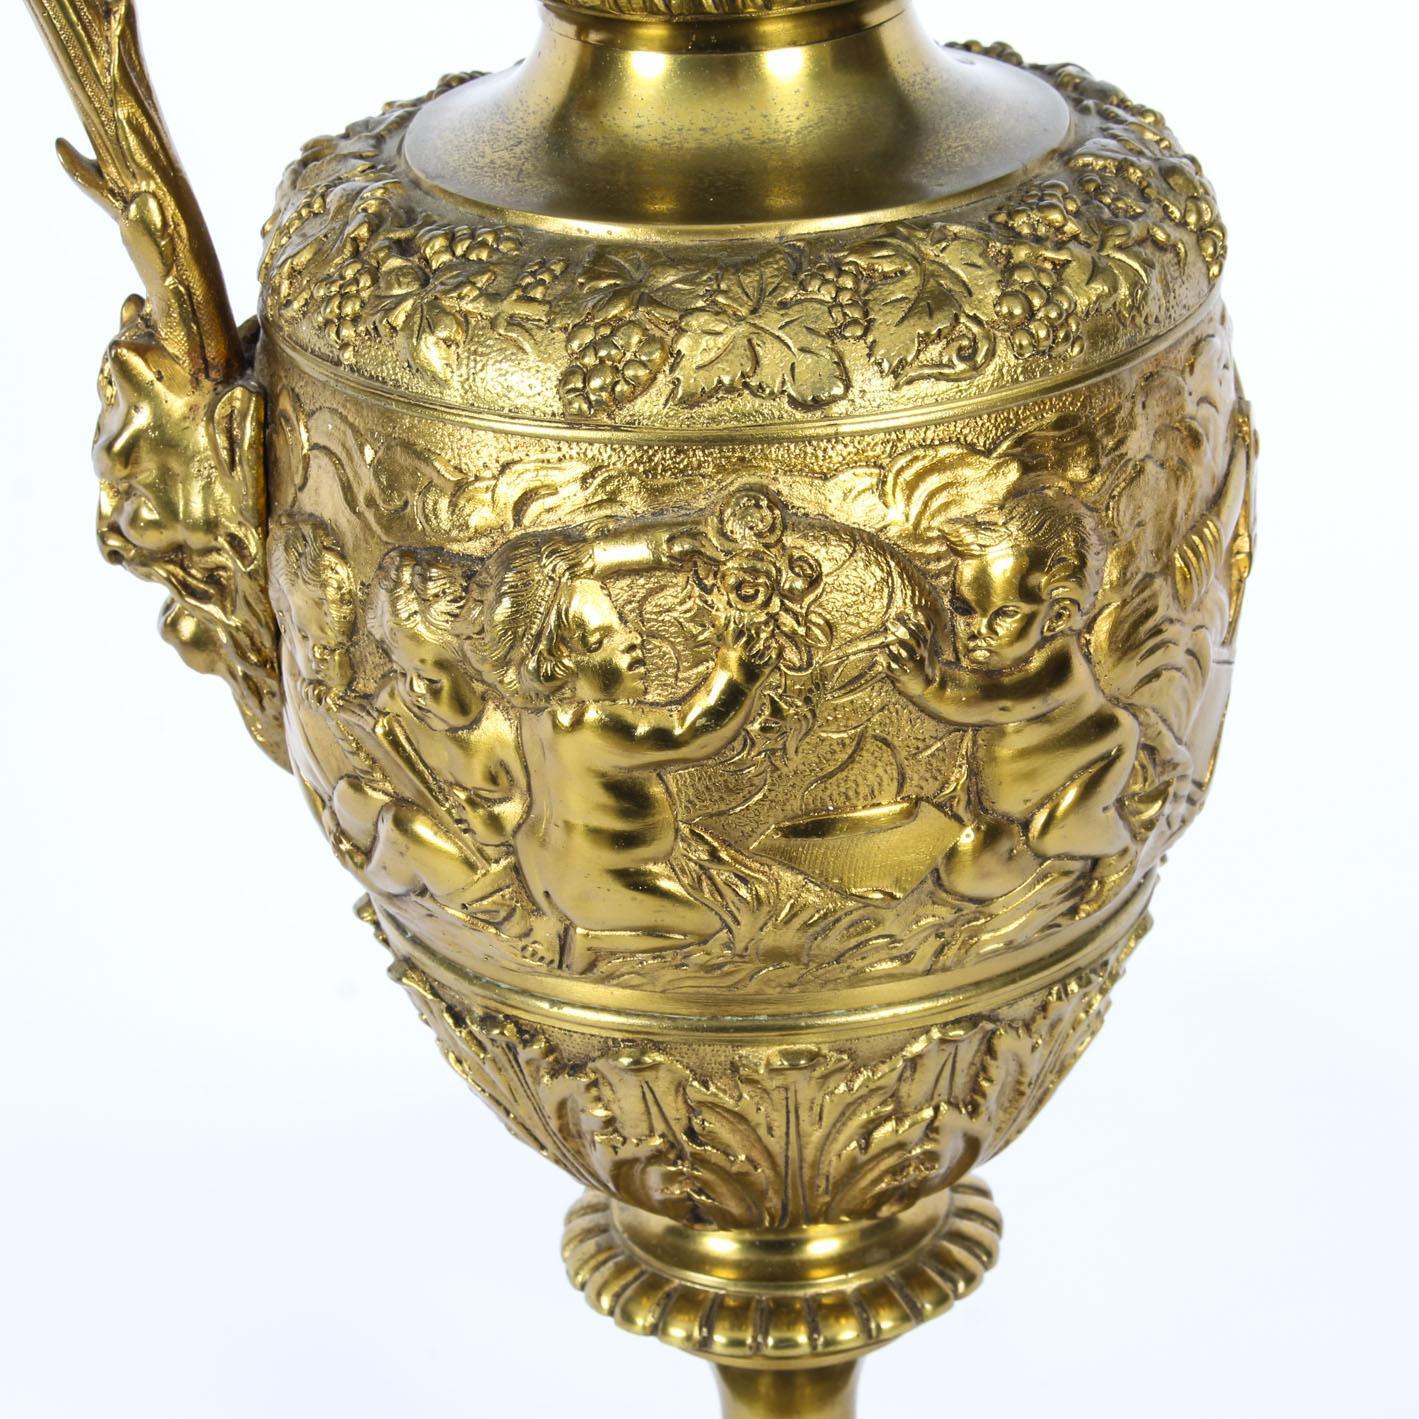 Antique Gilt Bronze Renaissance Revival Table Lamp, 19th Century For Sale 12